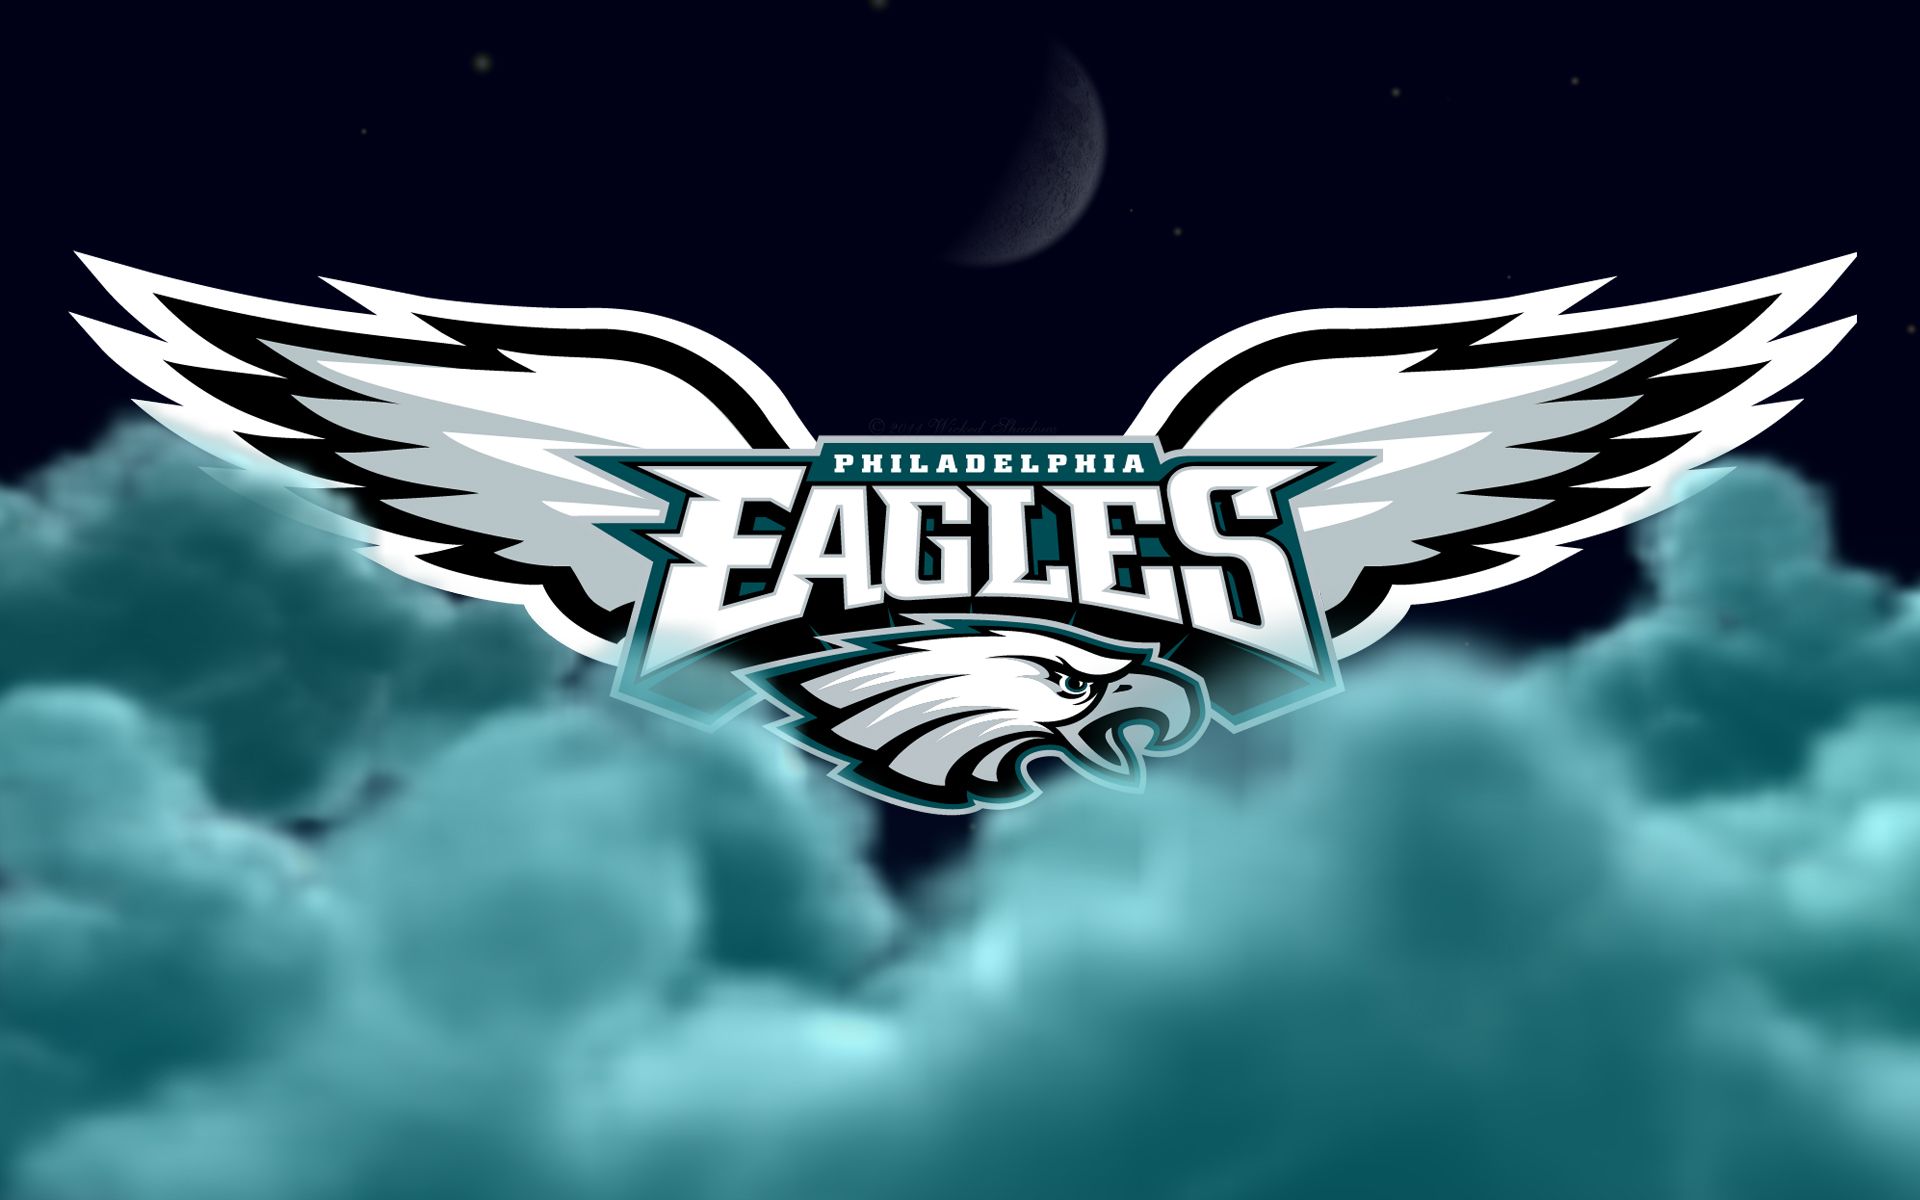 Philadelphia Eagles Flying High WS 1920 x 1200.jpg